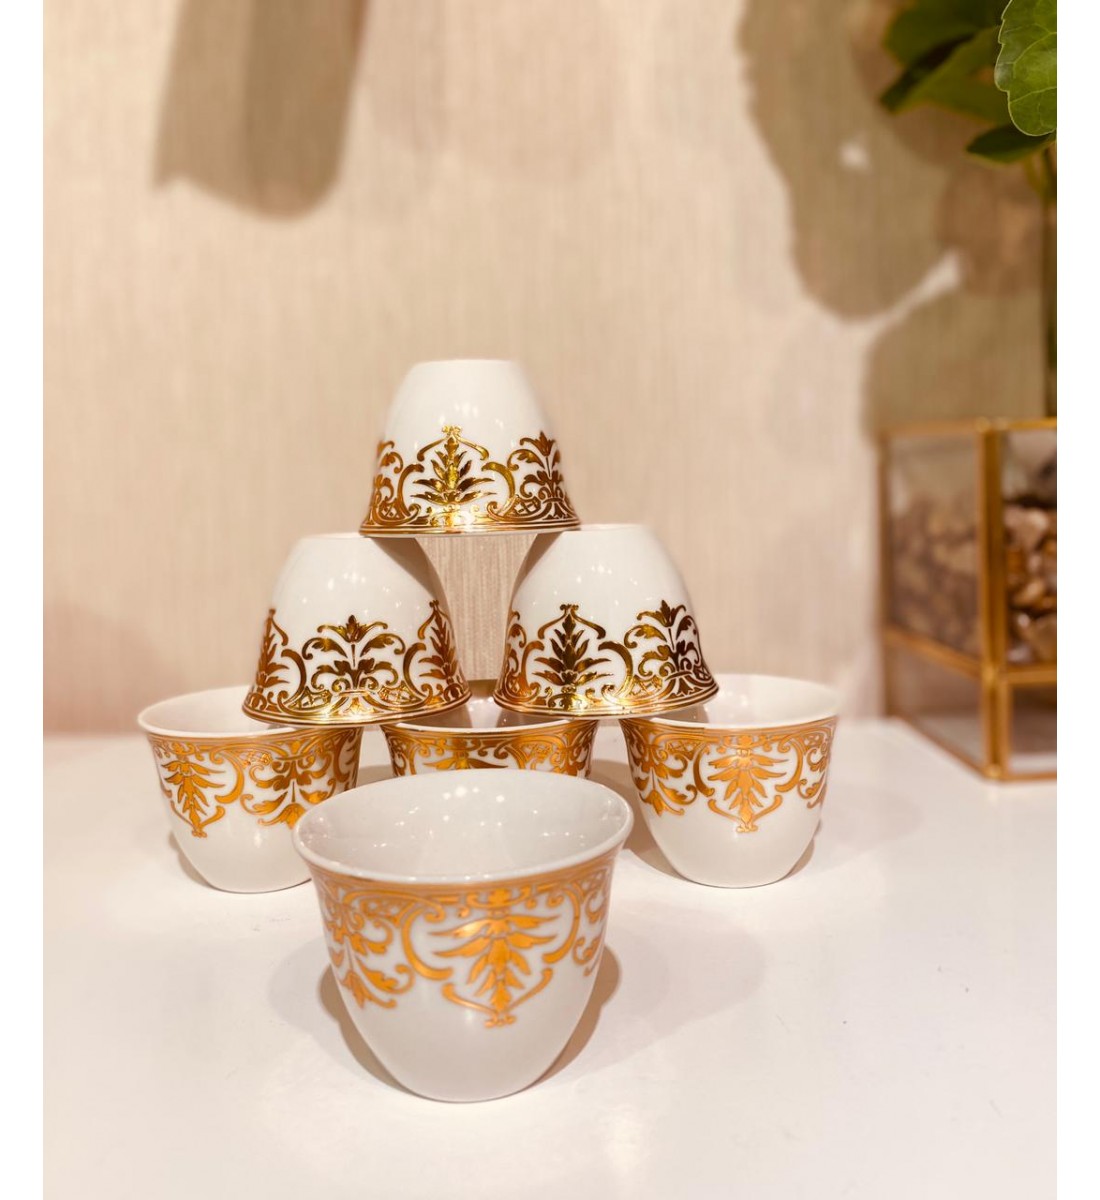 Luxury ceramic cups set 12 pieces